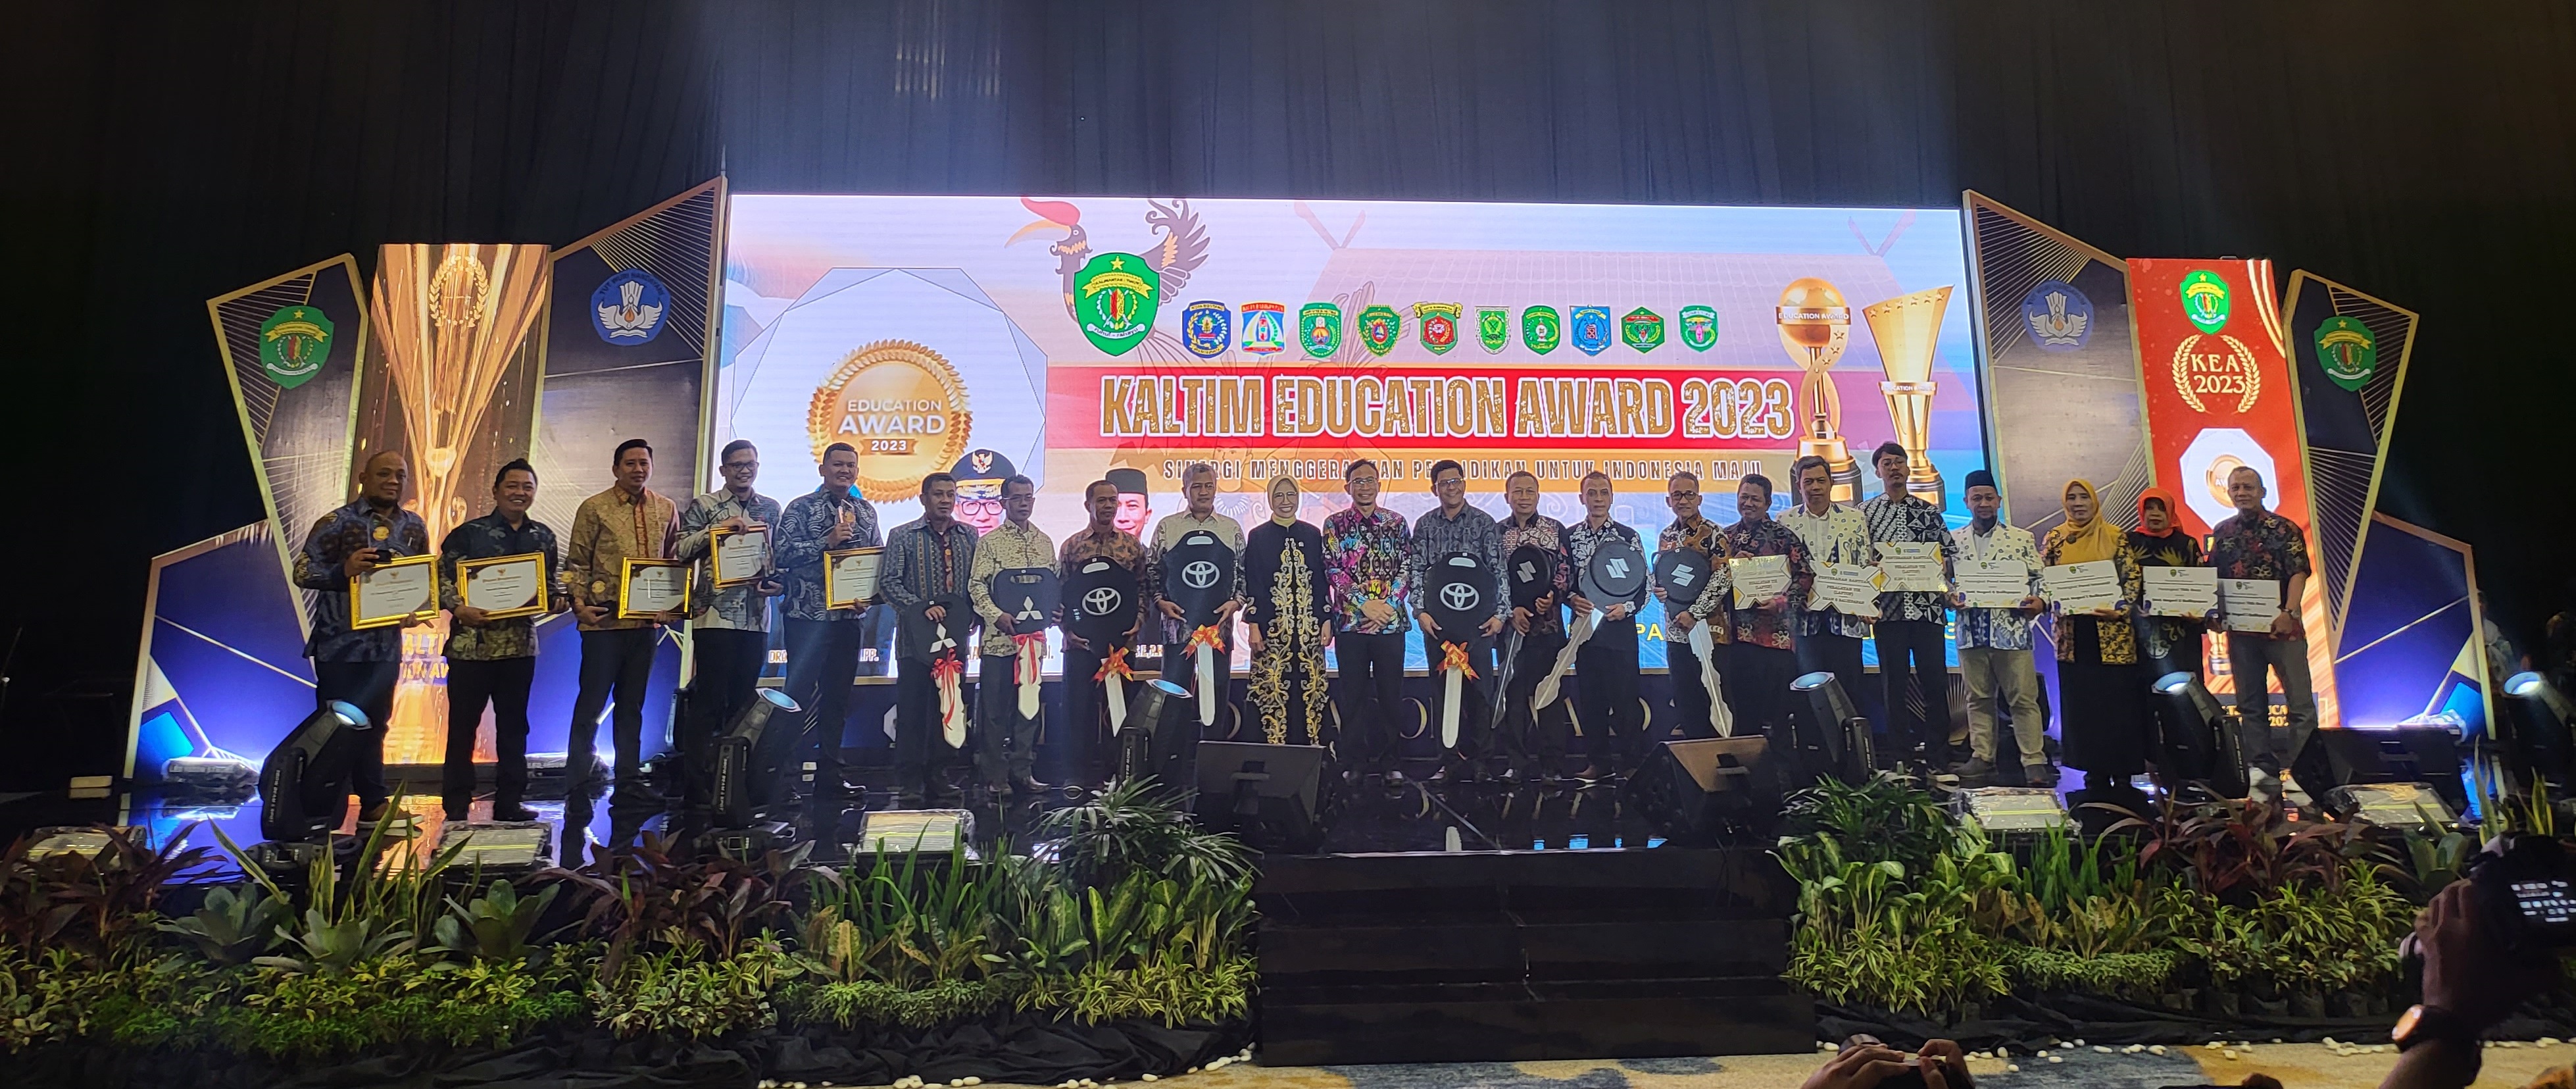 Kontribusi di Bidang Pendidikan, BUMA Dua Kali Berturut-turut Sabet Kaltim Education Award